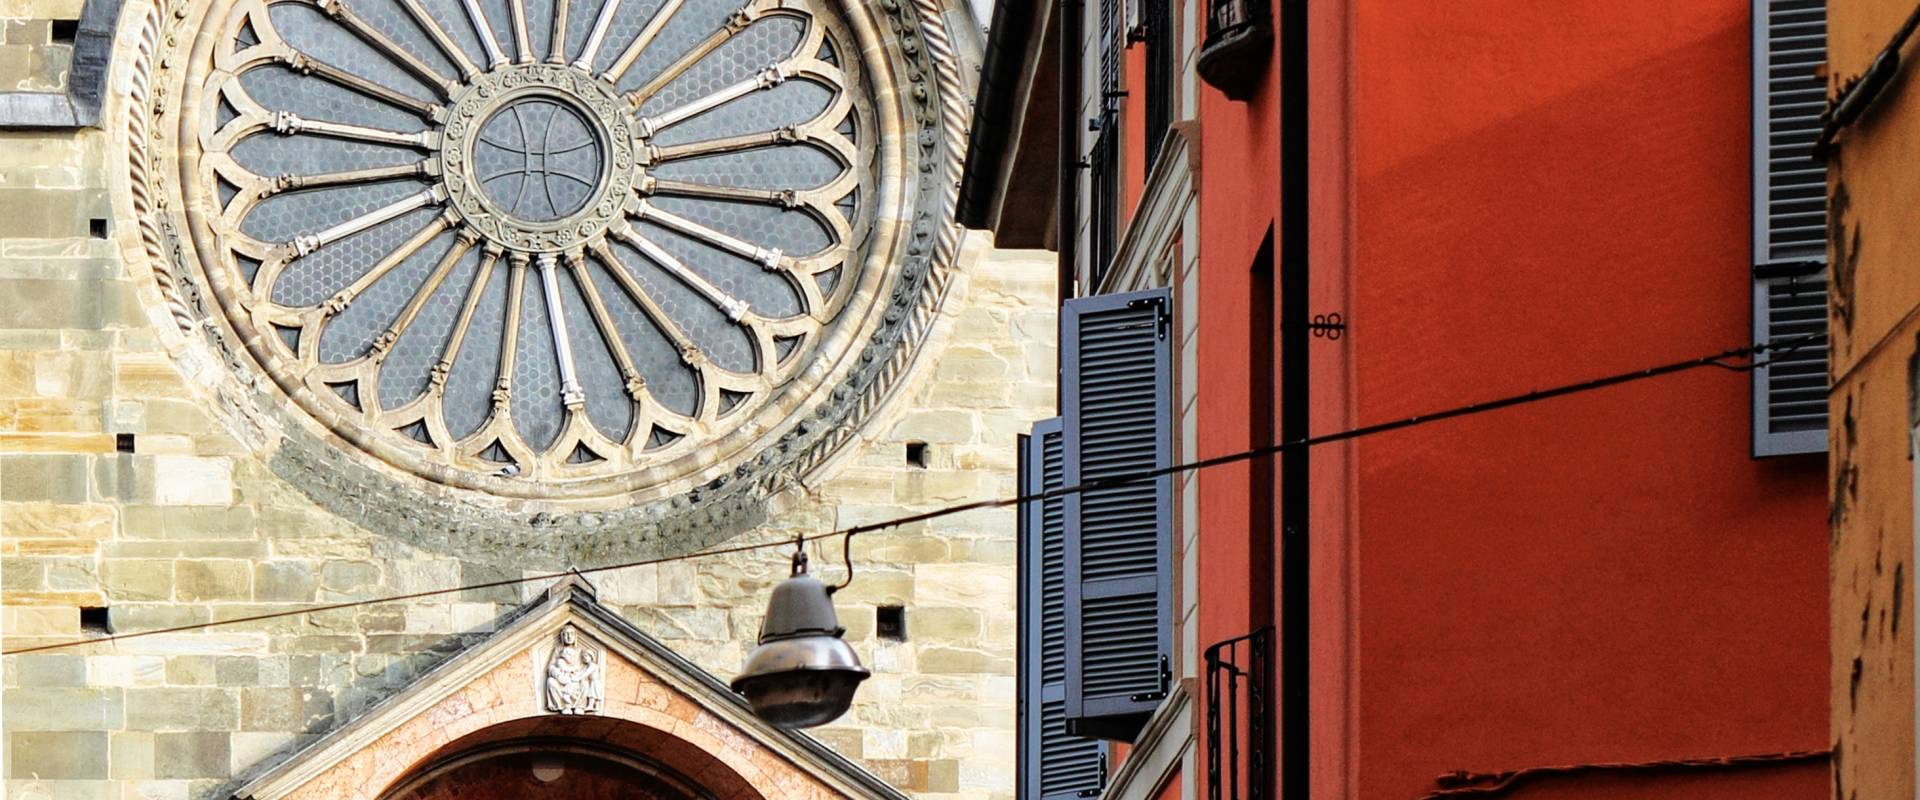 Il Duomo di Piacenza foto di Michela Marina